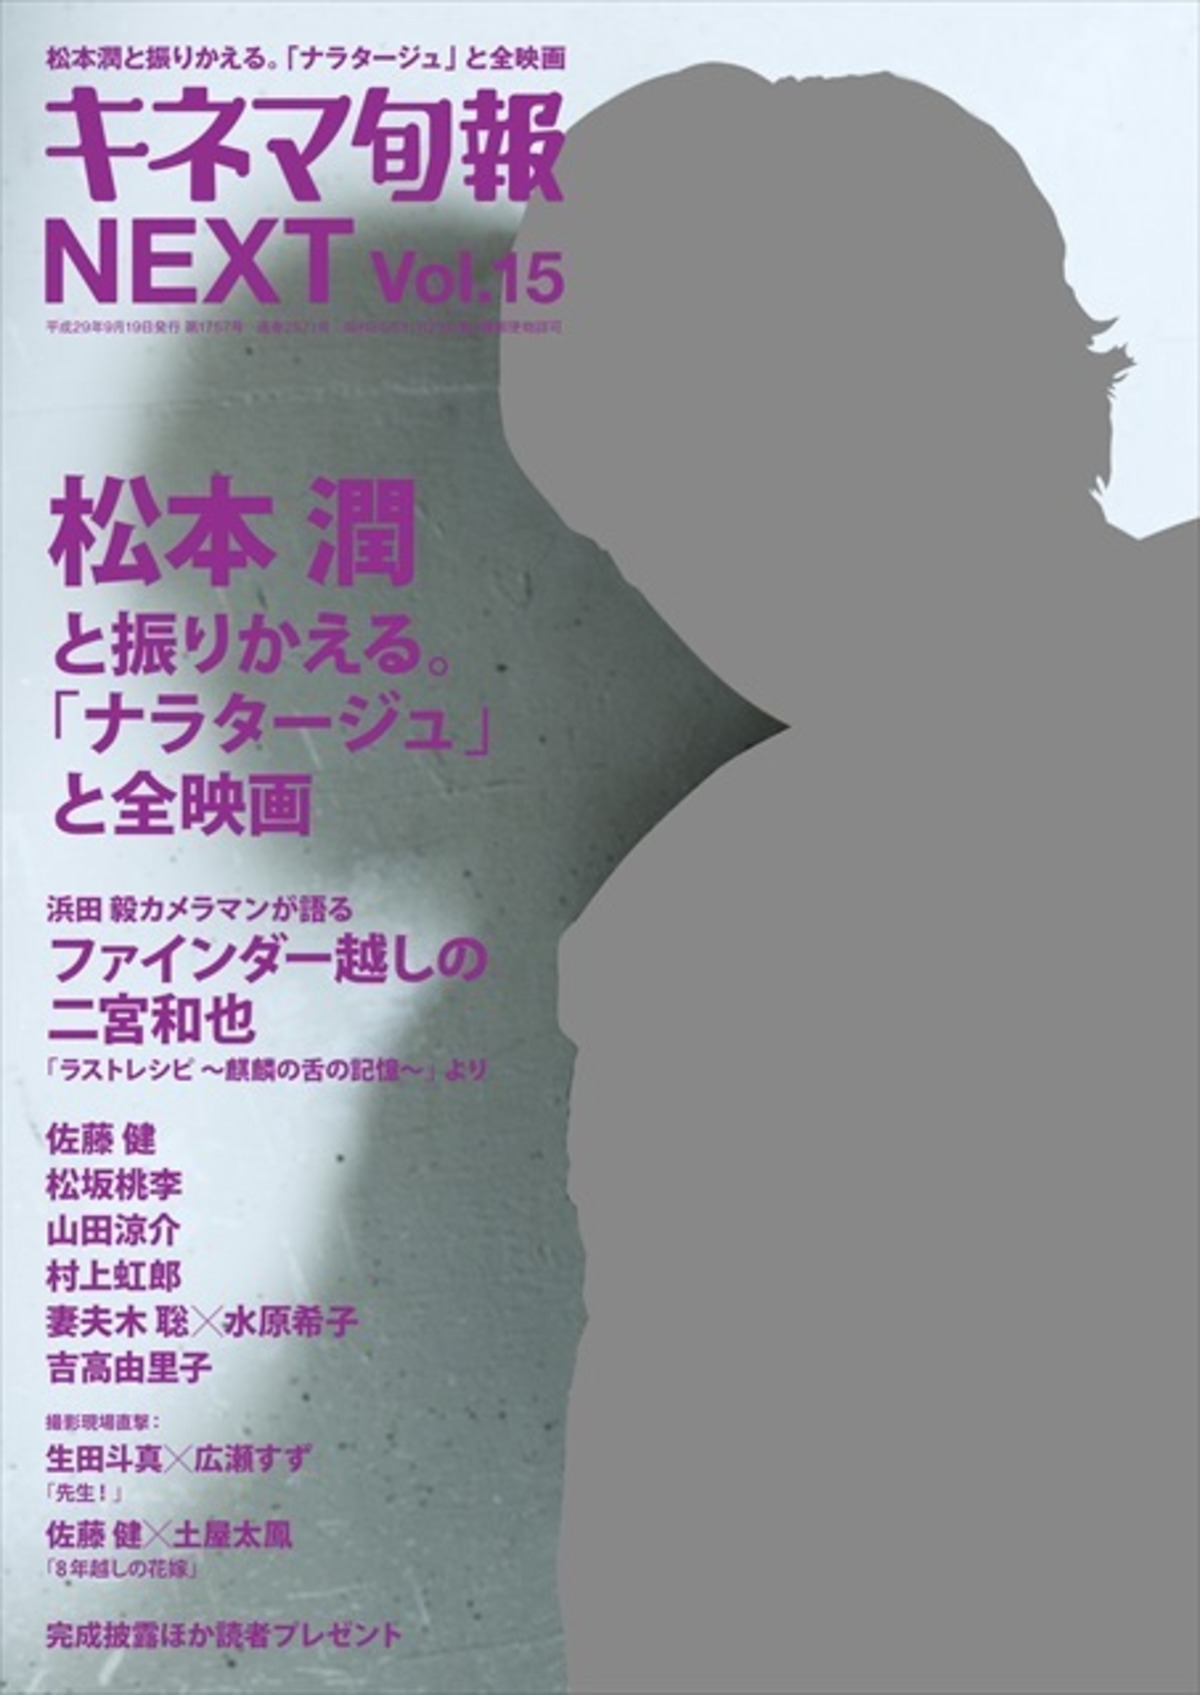 キネマ旬報増刊 キネマ旬報next Vol 15 松本潤 ナラタージュ No 1757 Kinejun Online